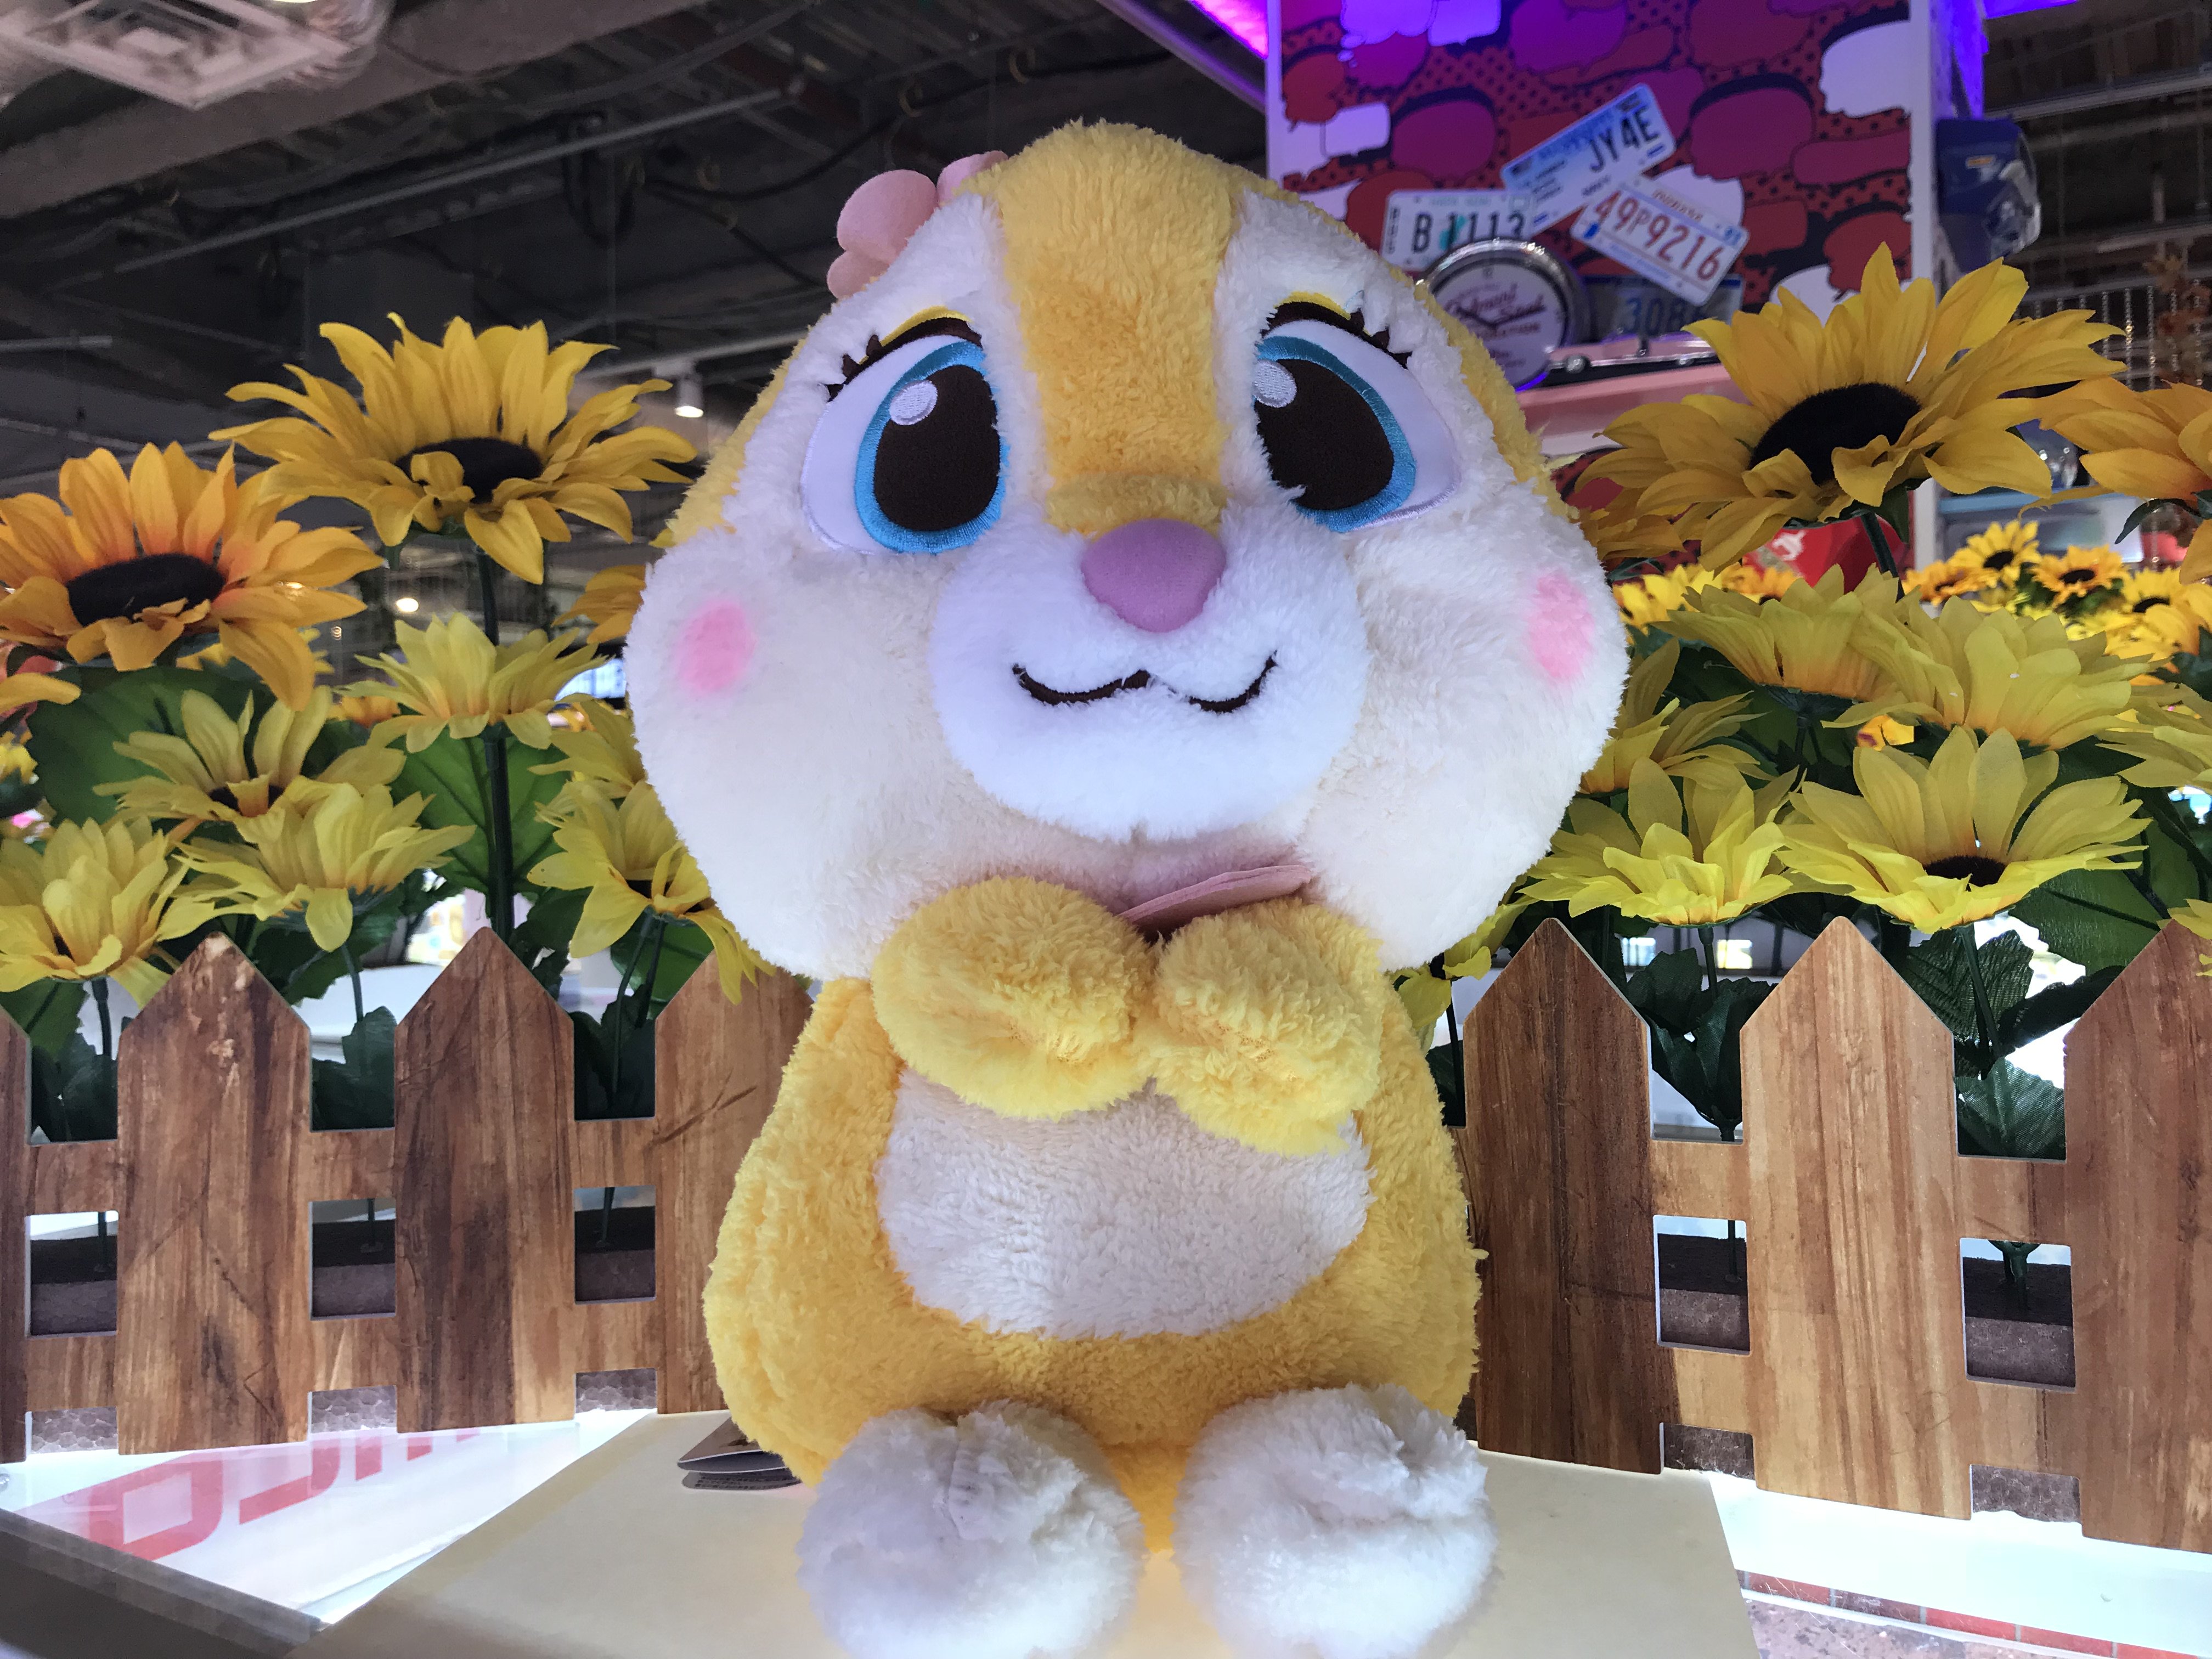 Namco横浜ワールドポーターズ店 本日miss Bunny Youメガジャンボぬいぐるみが本日投入されました バニーちゃんの Youシリーズ 頭にはちゃんとお花も付いていてもこもこで可愛いです 皆様ぜひ お迎えしてあげてくださいね Disney